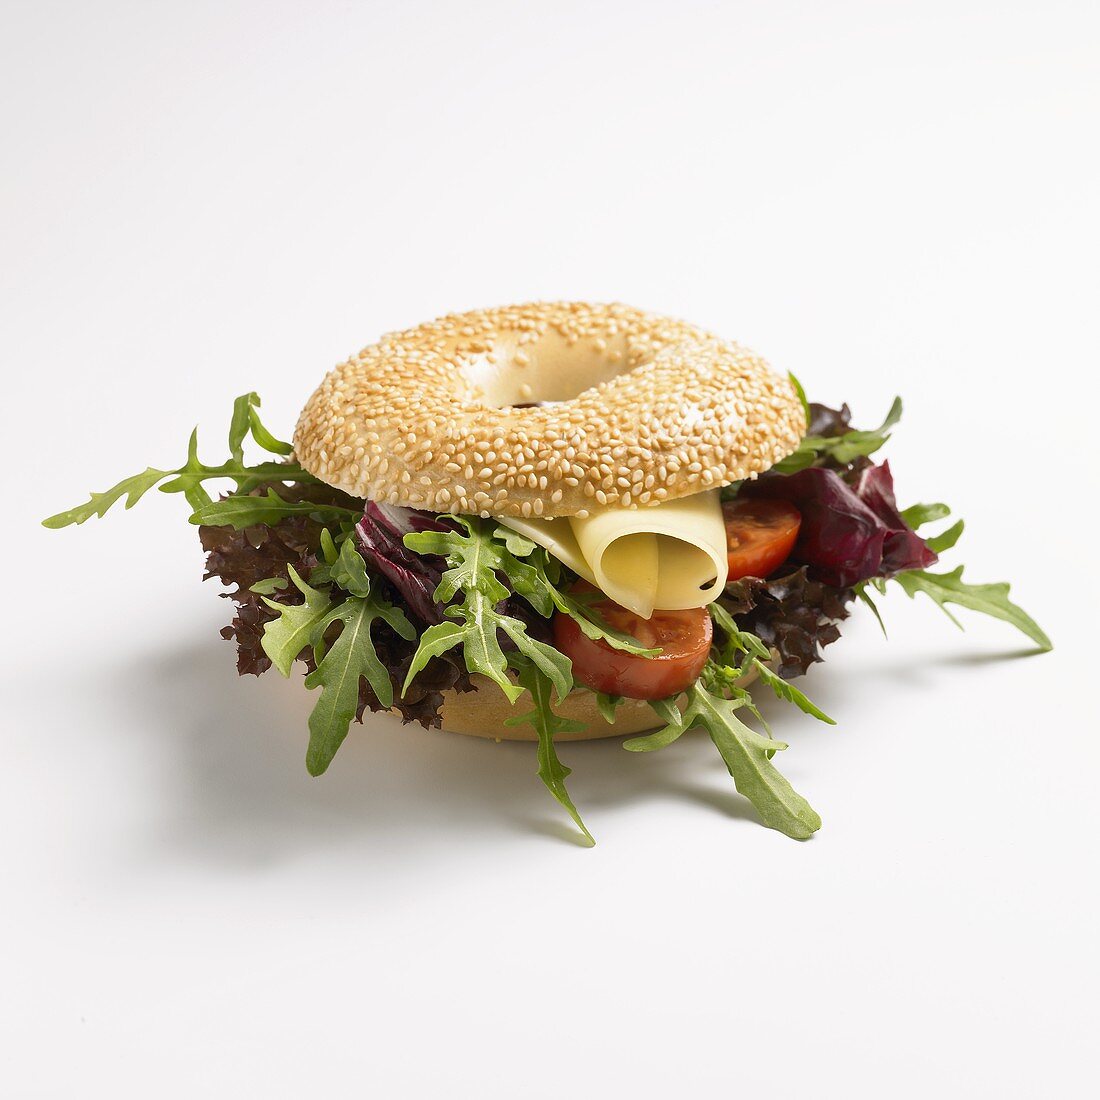 Bagle-Sandwich mit Salat und Käse